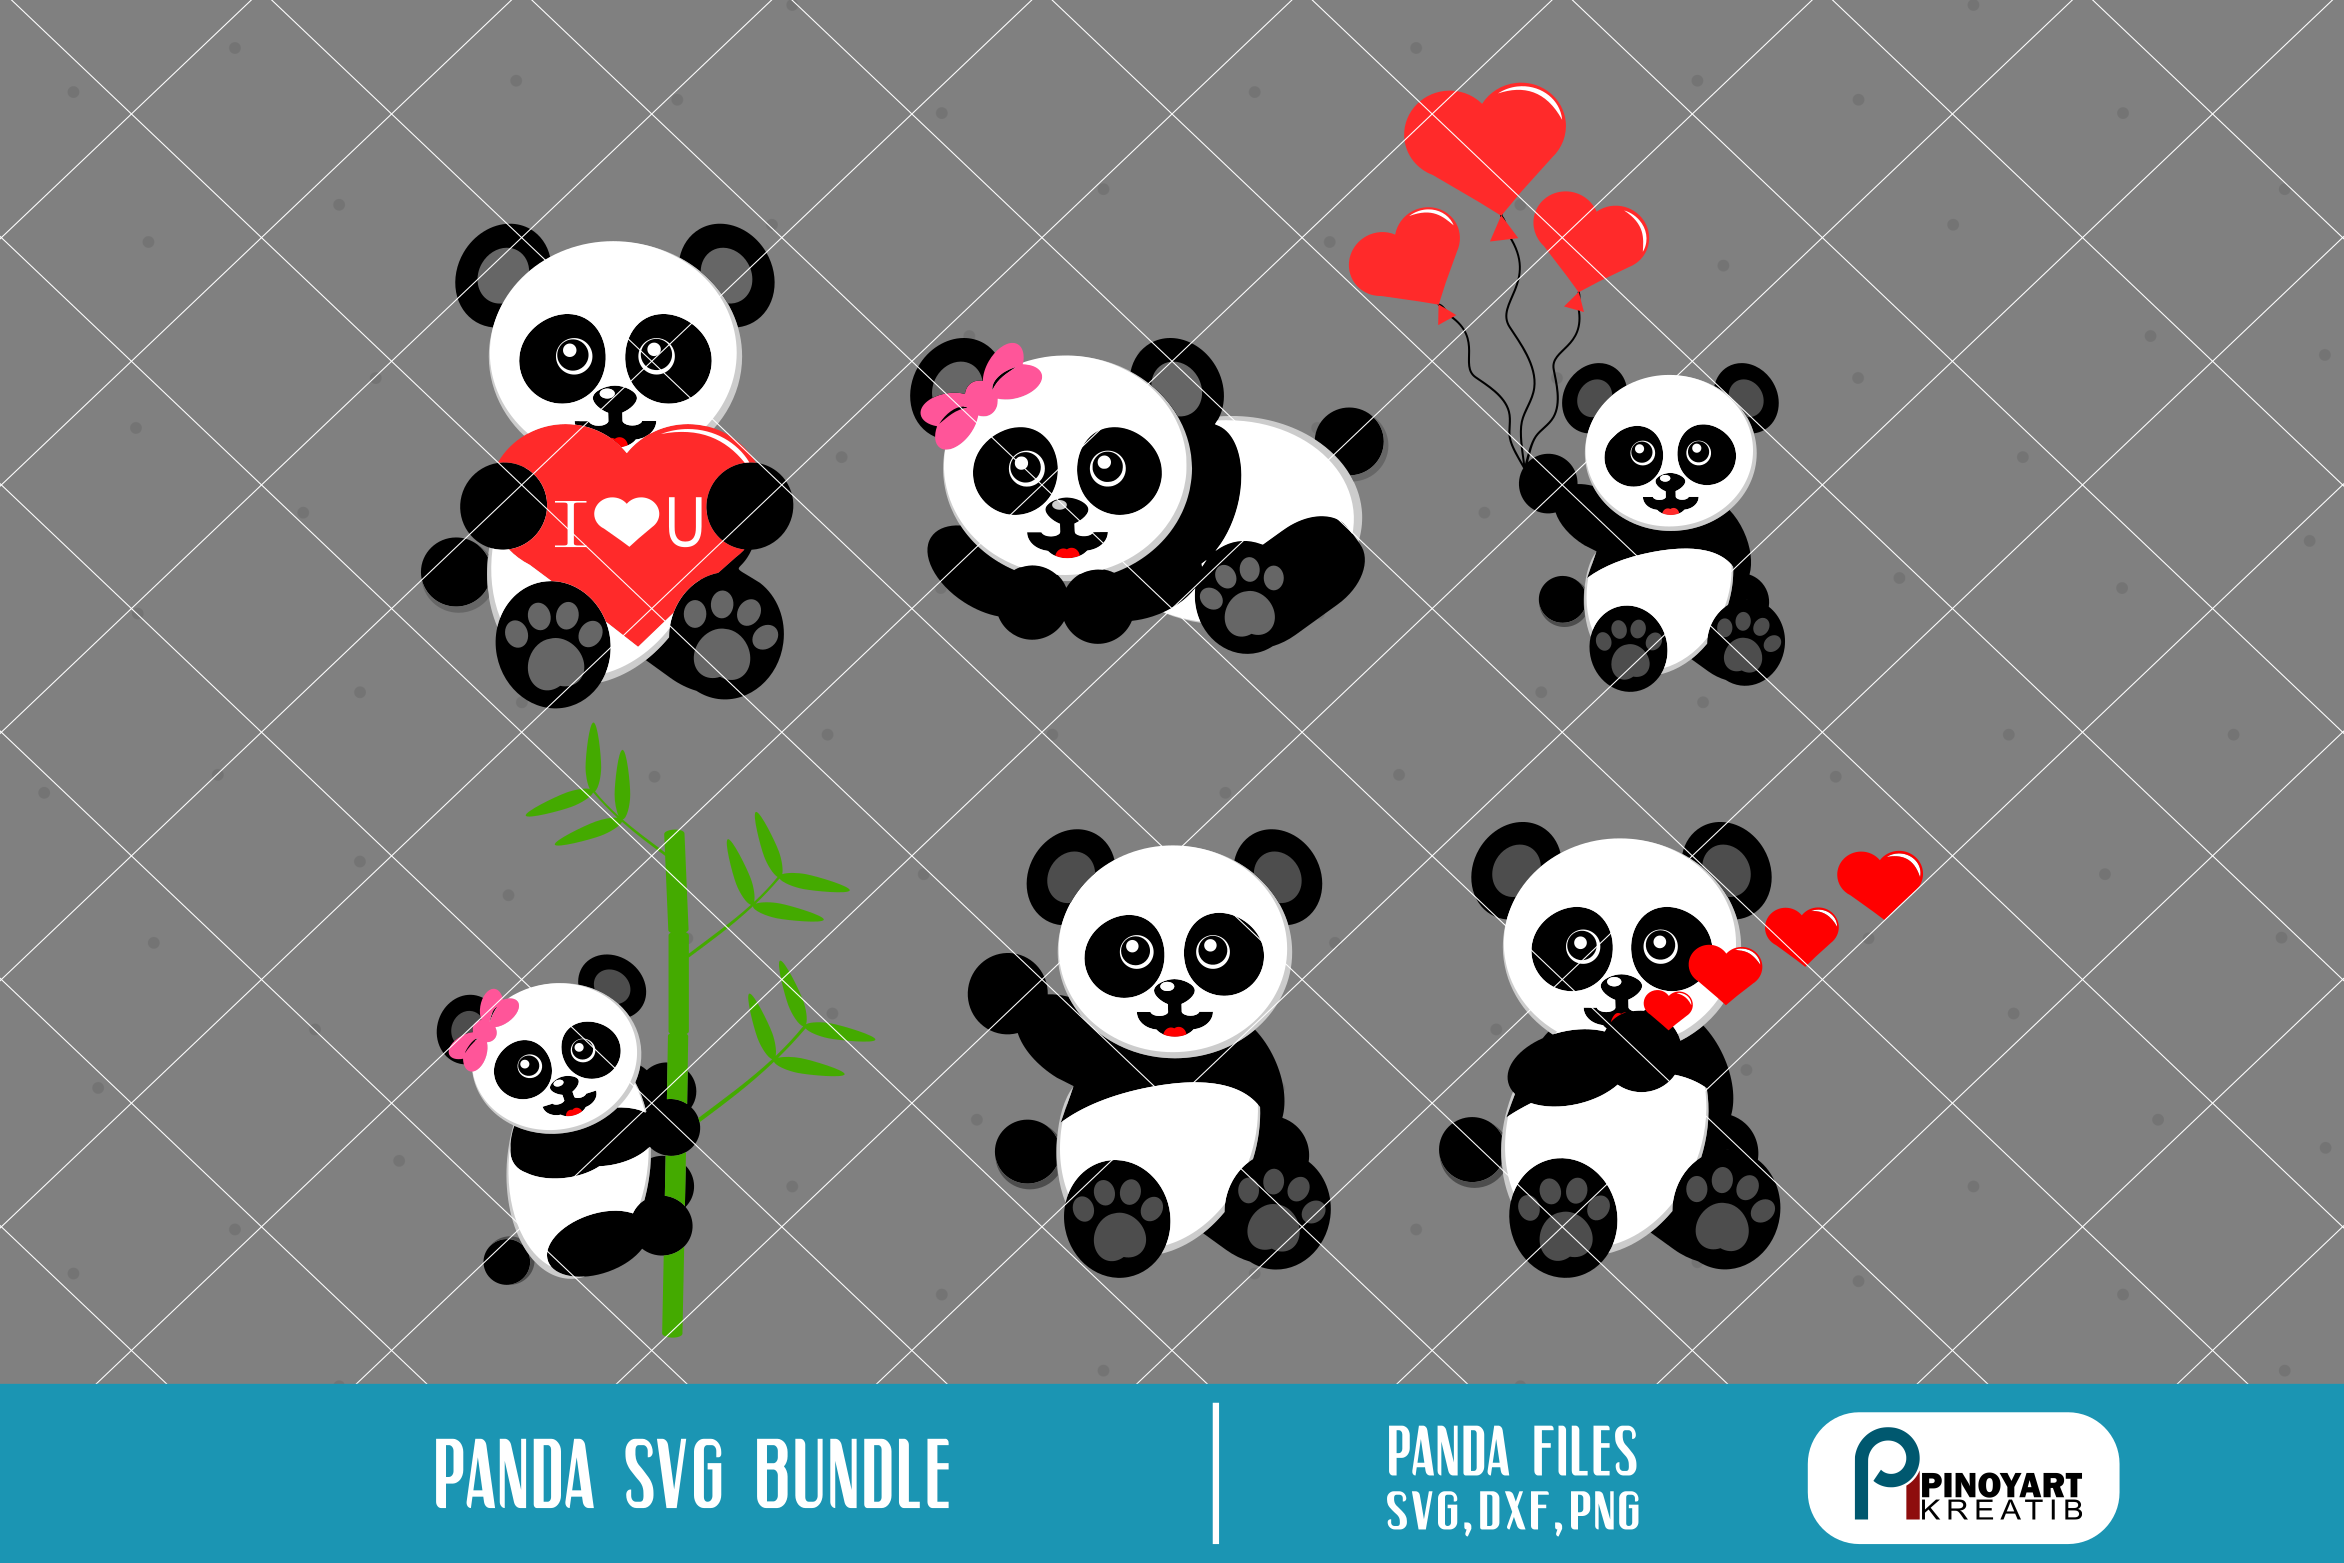 Download panda svg,panda svg file,panda clip art,panda cut file